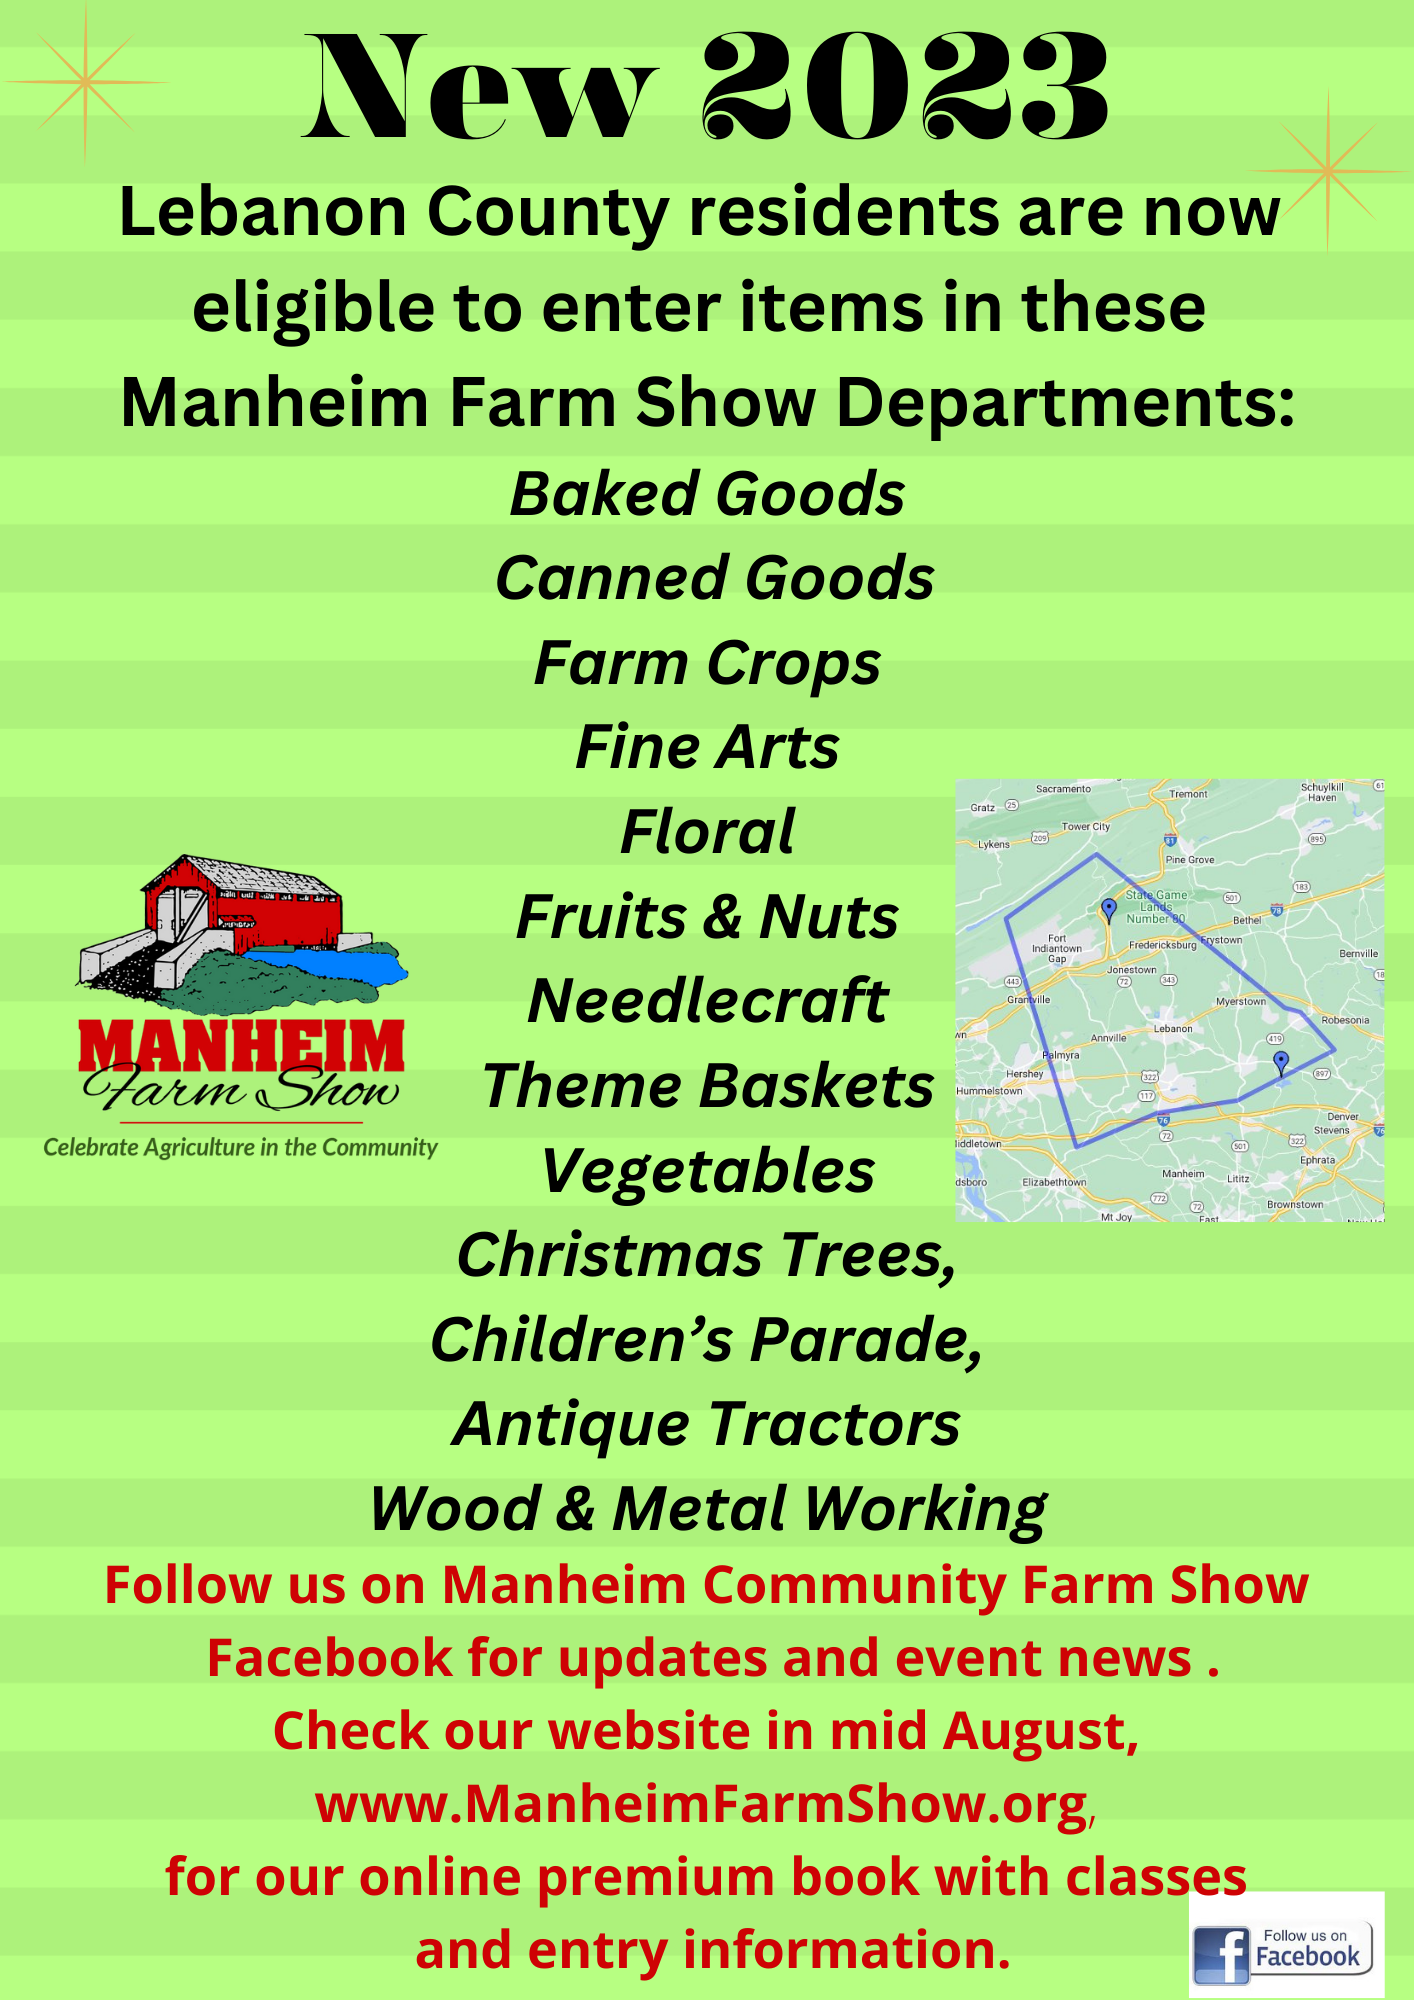 Manheim Community Farm Show